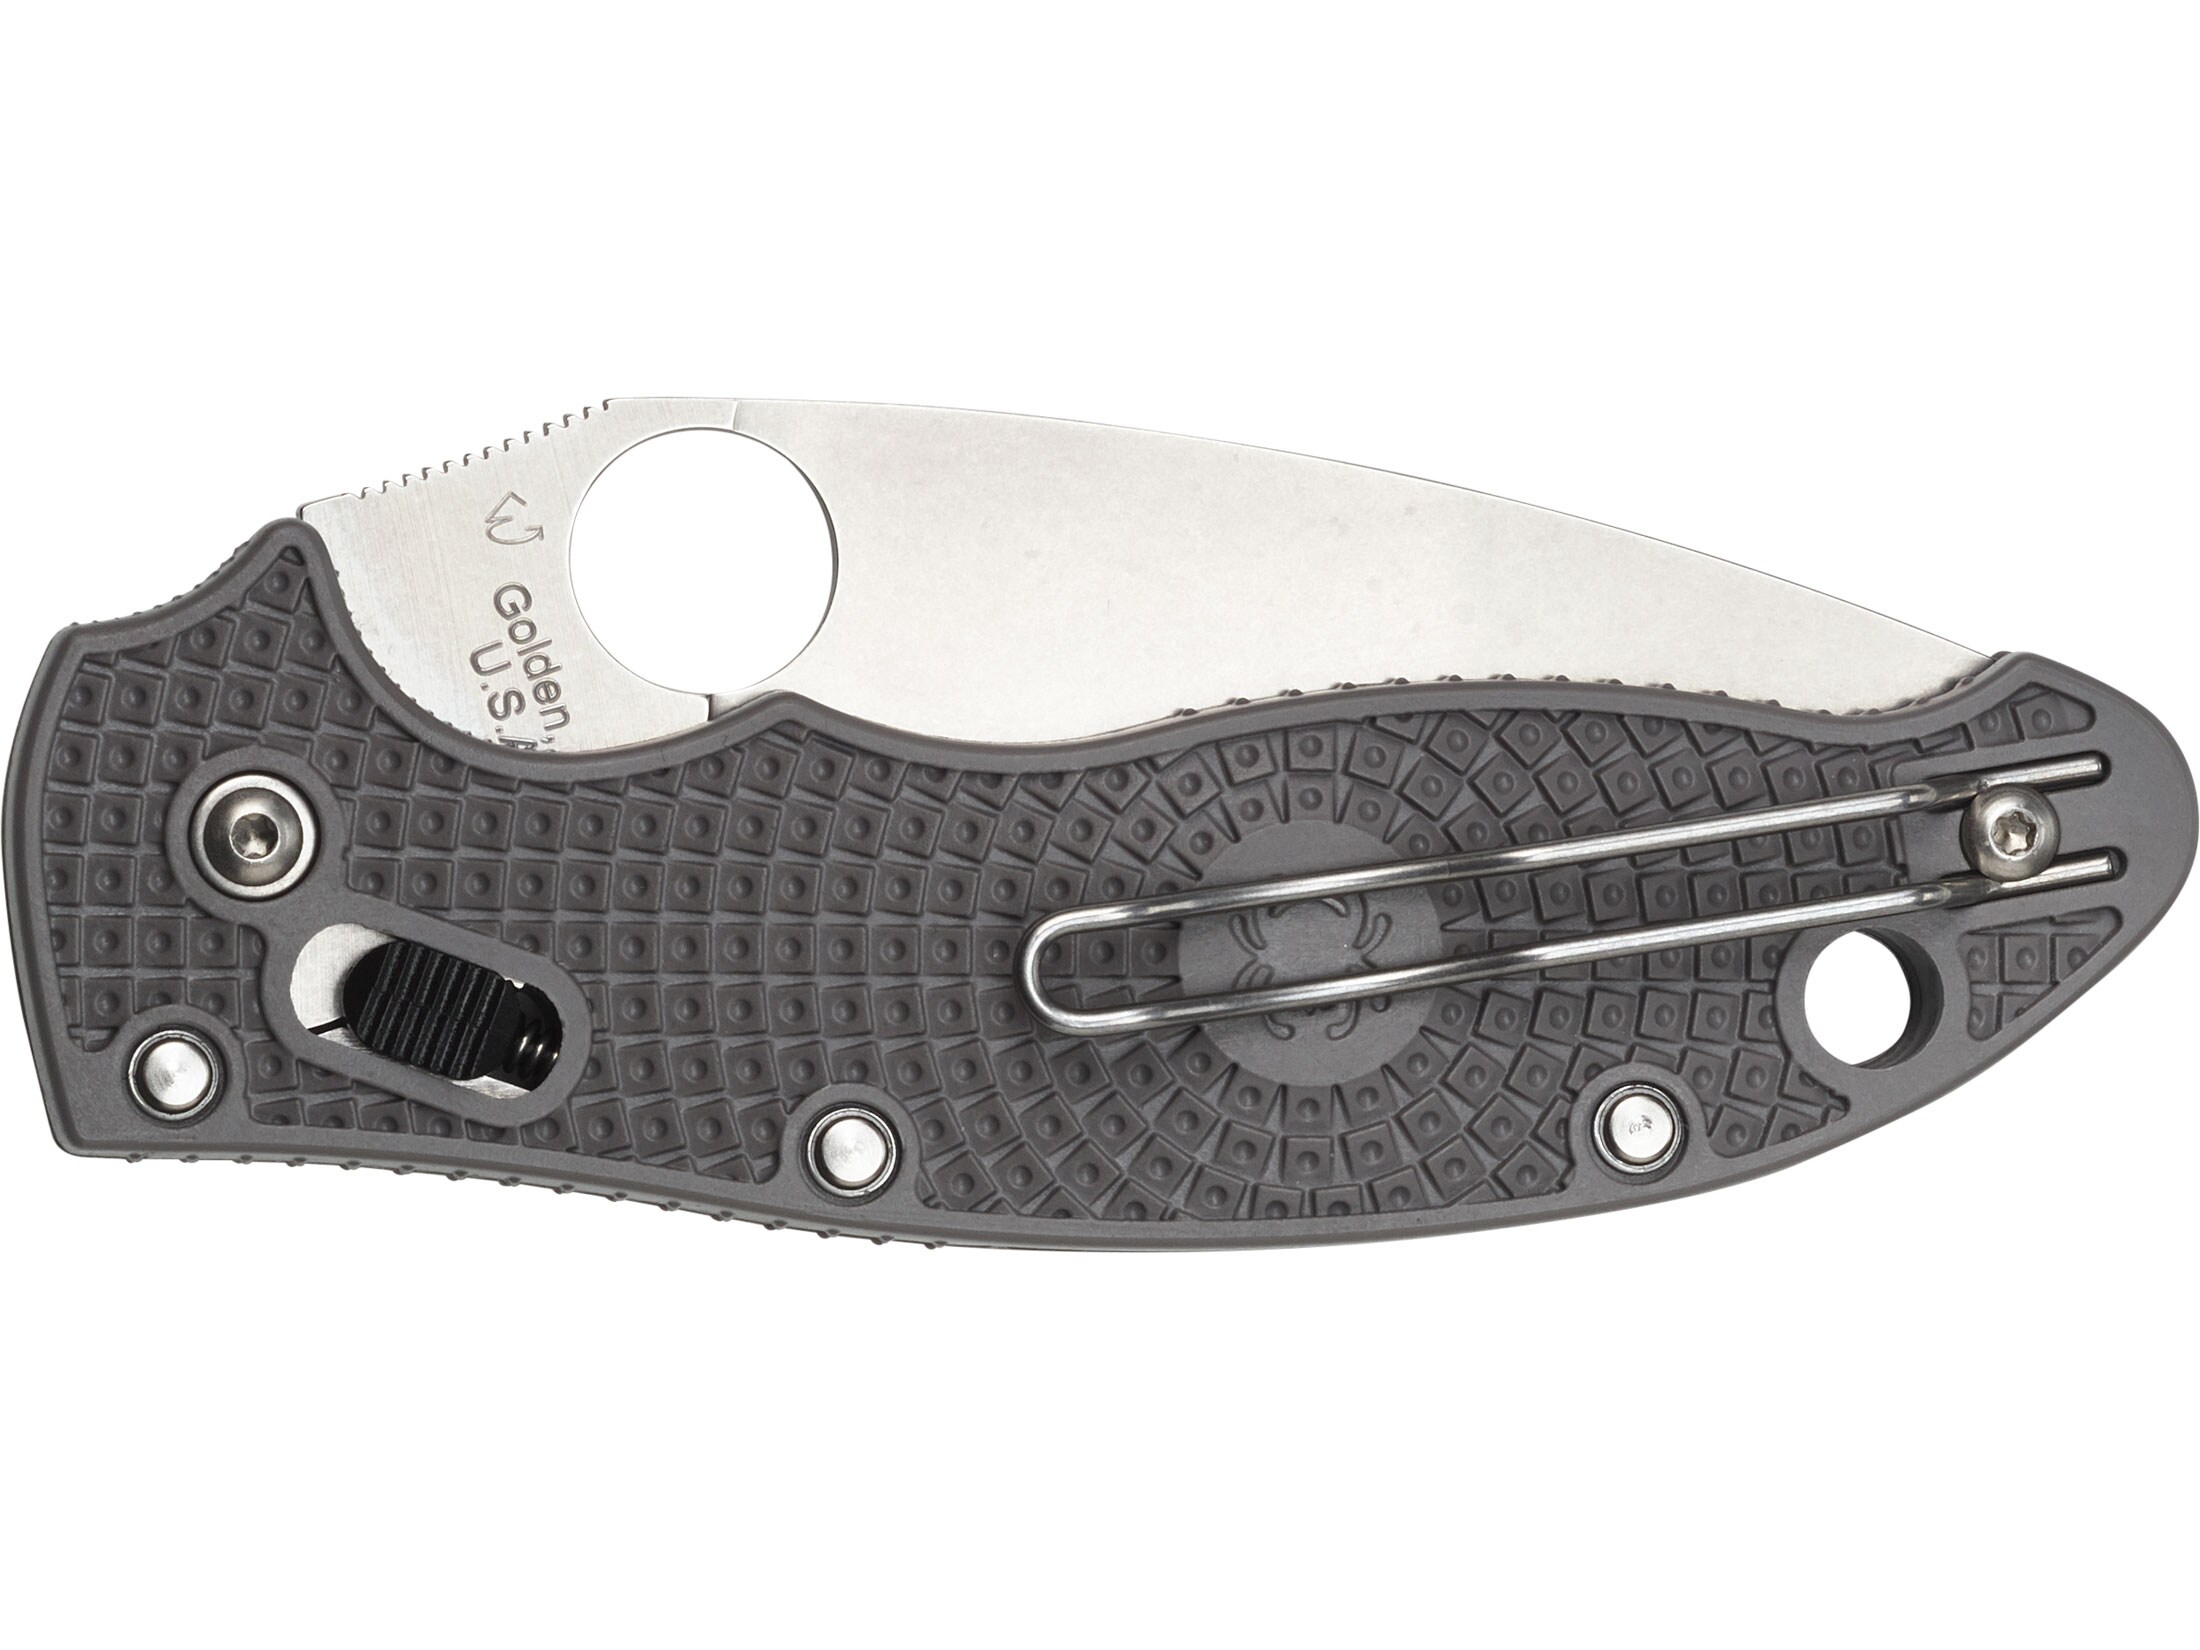 Spyderco Manix 2 Lightweight Folding Knife 3.38″ Drop Point Micro-Melt Maxamet Steel Blade FRCP Handle Gray For Sale